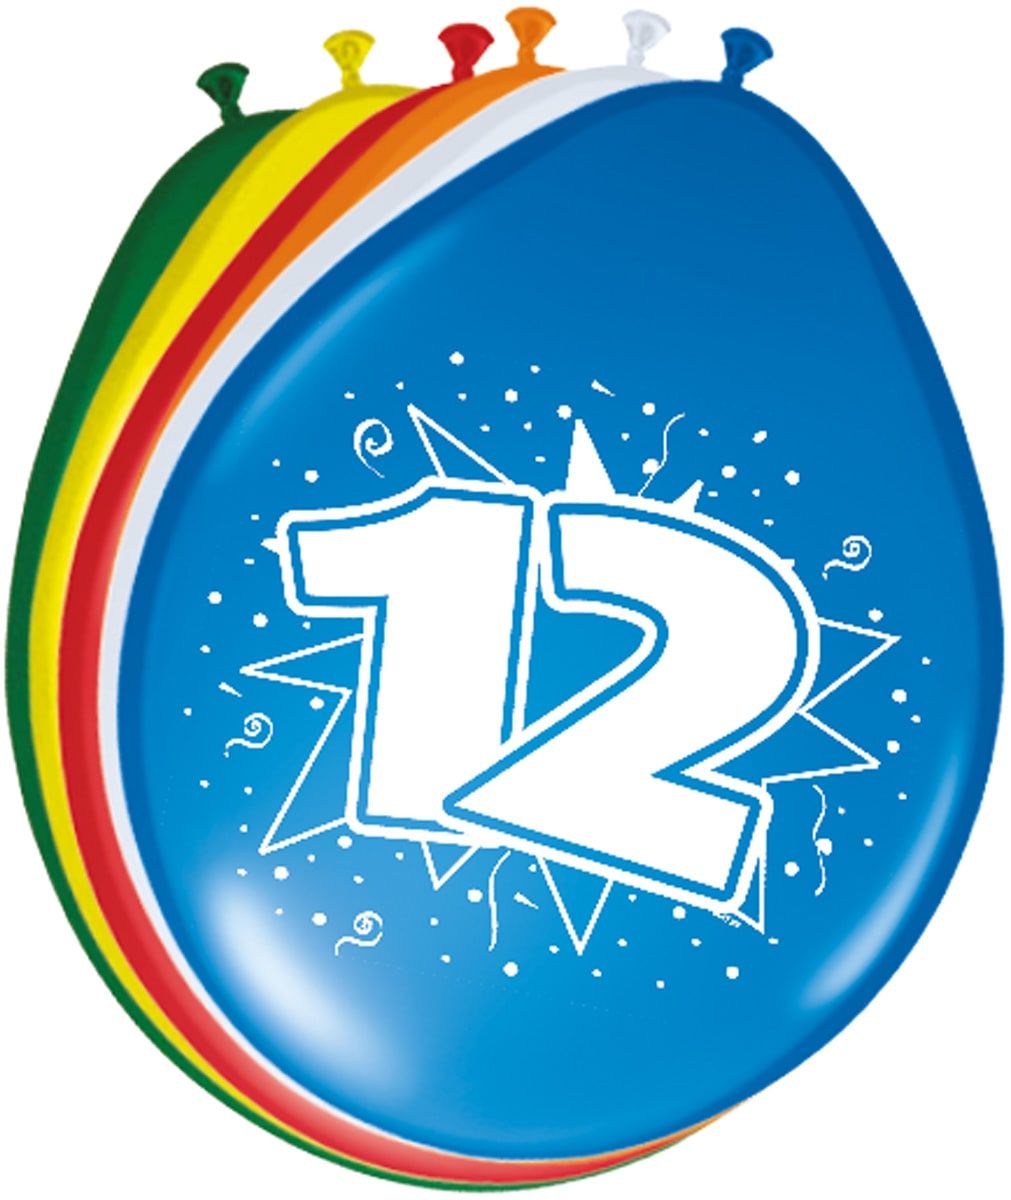 Feestelijke verjaardag ballonnen 12 jaar